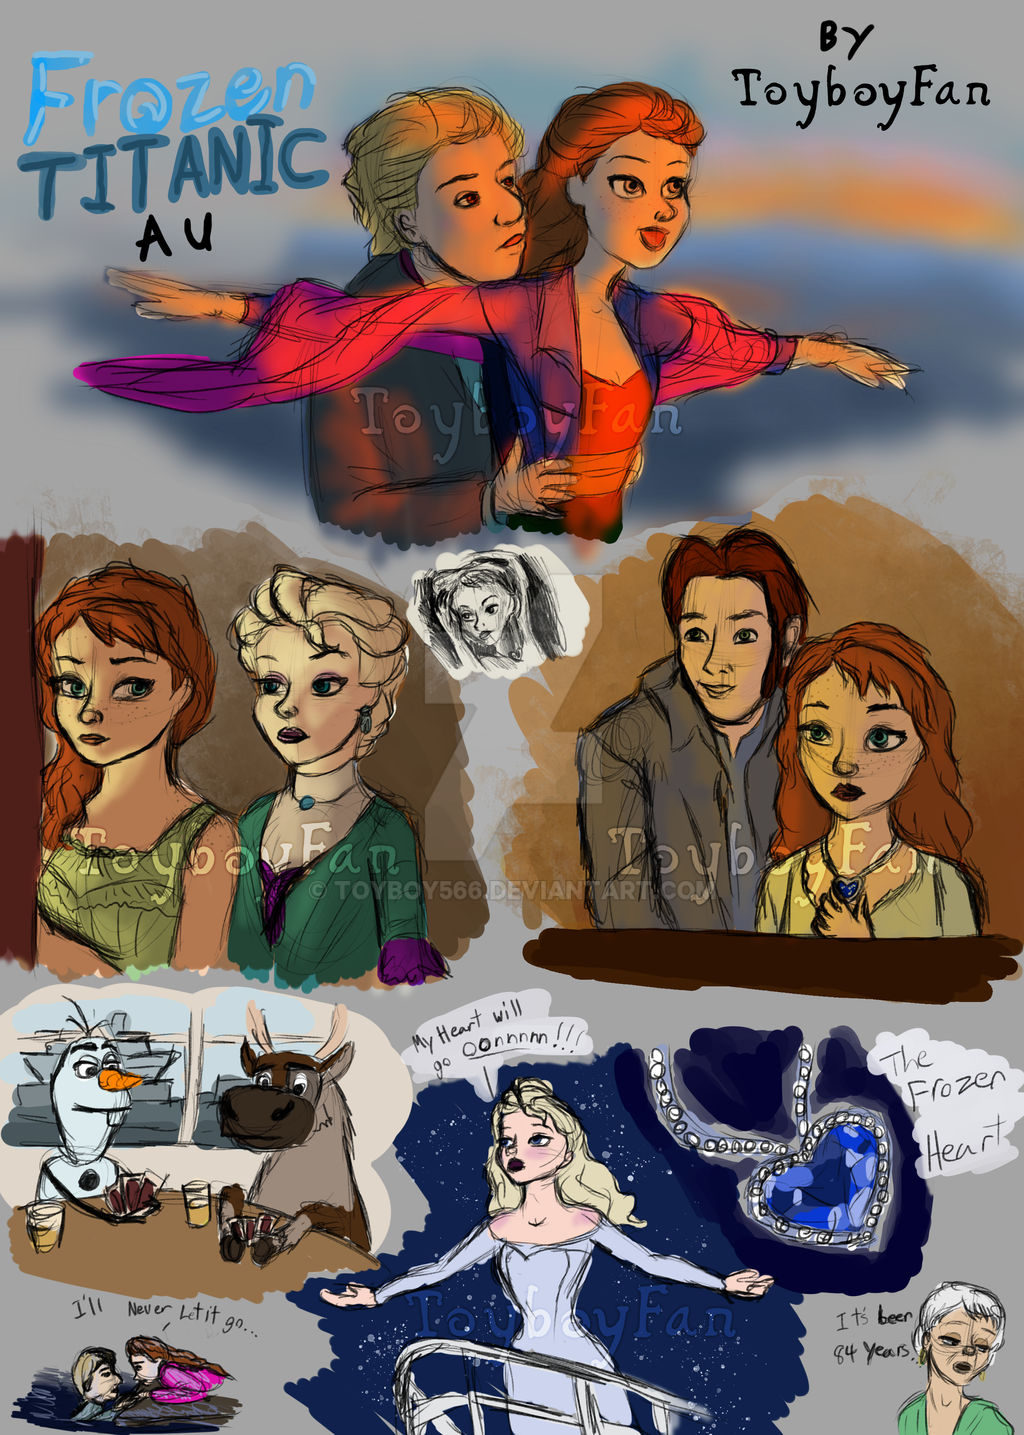 Les personnages Frozen dans d'autres univers. Frozen_titanic_au_sketch_dump_by_toyboy566_dc82sd4-fullview.jpg?token=eyJ0eXAiOiJKV1QiLCJhbGciOiJIUzI1NiJ9.eyJzdWIiOiJ1cm46YXBwOjdlMGQxODg5ODIyNjQzNzNhNWYwZDQxNWVhMGQyNmUwIiwiaXNzIjoidXJuOmFwcDo3ZTBkMTg4OTgyMjY0MzczYTVmMGQ0MTVlYTBkMjZlMCIsIm9iaiI6W1t7InBhdGgiOiJcL2ZcLzY0Zjc0MGE3LTVmNDgtNGJiNC1hMzE4LWY3ZWExNjBjZmNlMlwvZGM4MnNkNC1hZGZhOGNlNy0xYmI2LTQ4MjAtYmUzZS05Y2MwNjI3MzRmZDcucG5nIiwiaGVpZ2h0IjoiPD0xNDM1Iiwid2lkdGgiOiI8PTEwMjQifV1dLCJhdWQiOlsidXJuOnNlcnZpY2U6aW1hZ2Uud2F0ZXJtYXJrIl0sIndtayI6eyJwYXRoIjoiXC93bVwvNjRmNzQwYTctNWY0OC00YmI0LWEzMTgtZjdlYTE2MGNmY2UyXC90b3lib3k1NjYtNC5wbmciLCJvcGFjaXR5Ijo5NSwicHJvcG9ydGlvbnMiOjAuNDUsImdyYXZpdHkiOiJjZW50ZXIifX0